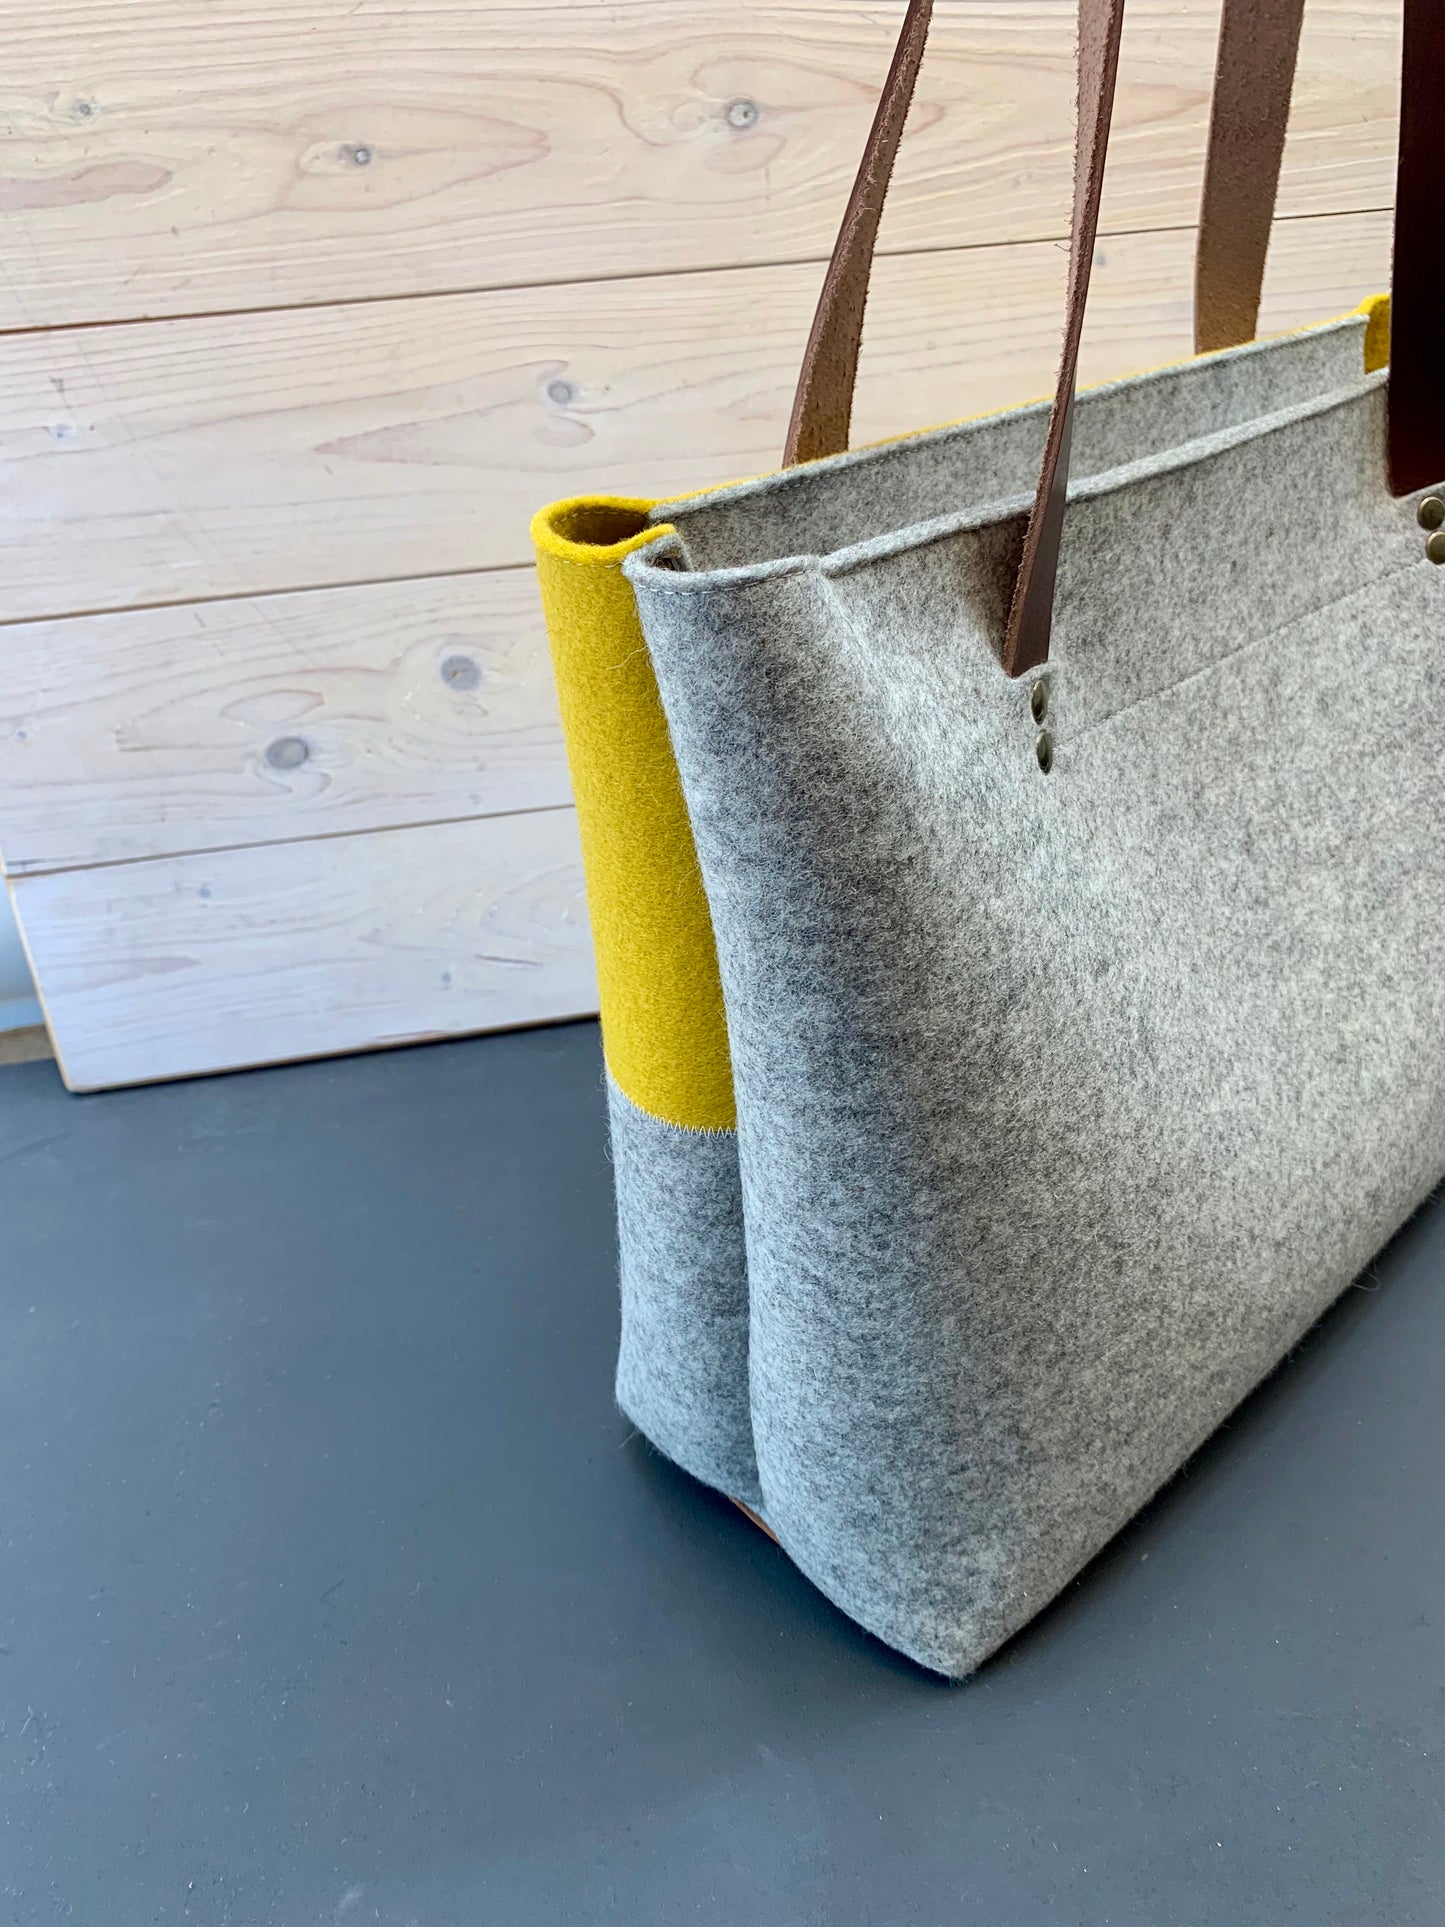 GRIFT XL vilten tas, grijs en geel, met rits | Large felt shopper bag with zipper in yellow and grey - Westerman Bags vilten tassen en hoezen. Dutch Design.